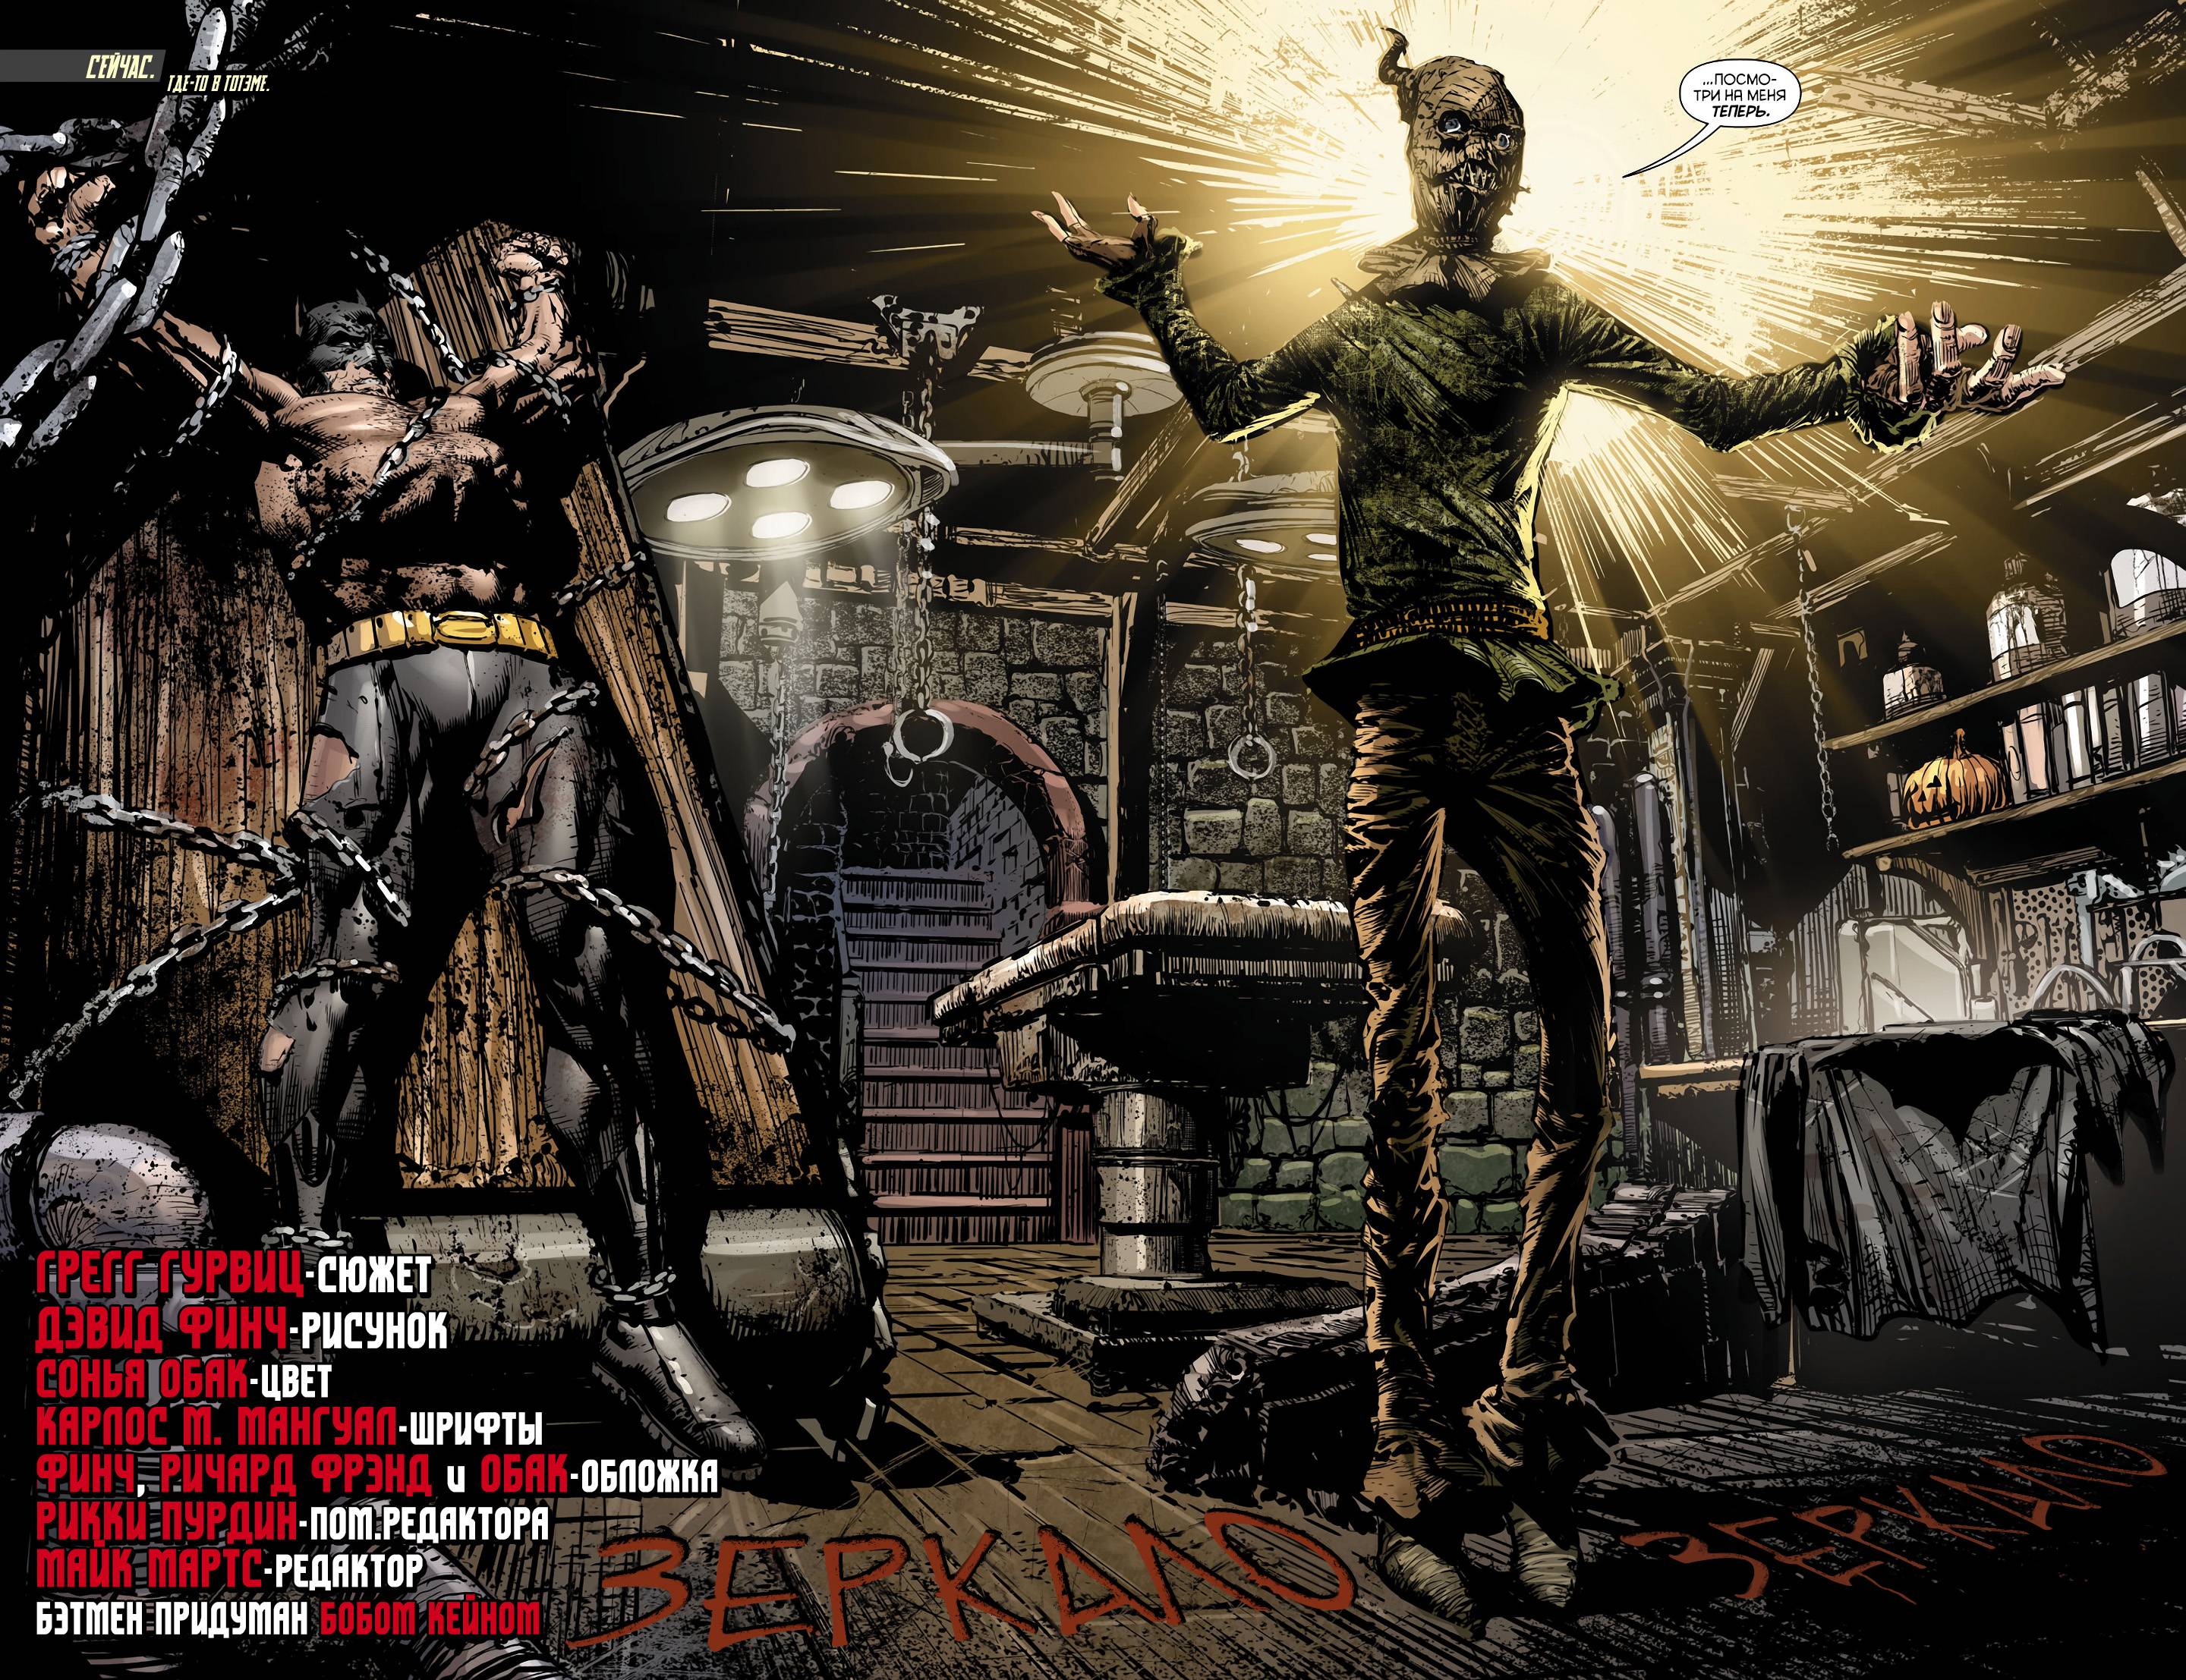 Бэтмен: Темный Рыцарь №12 онлайн